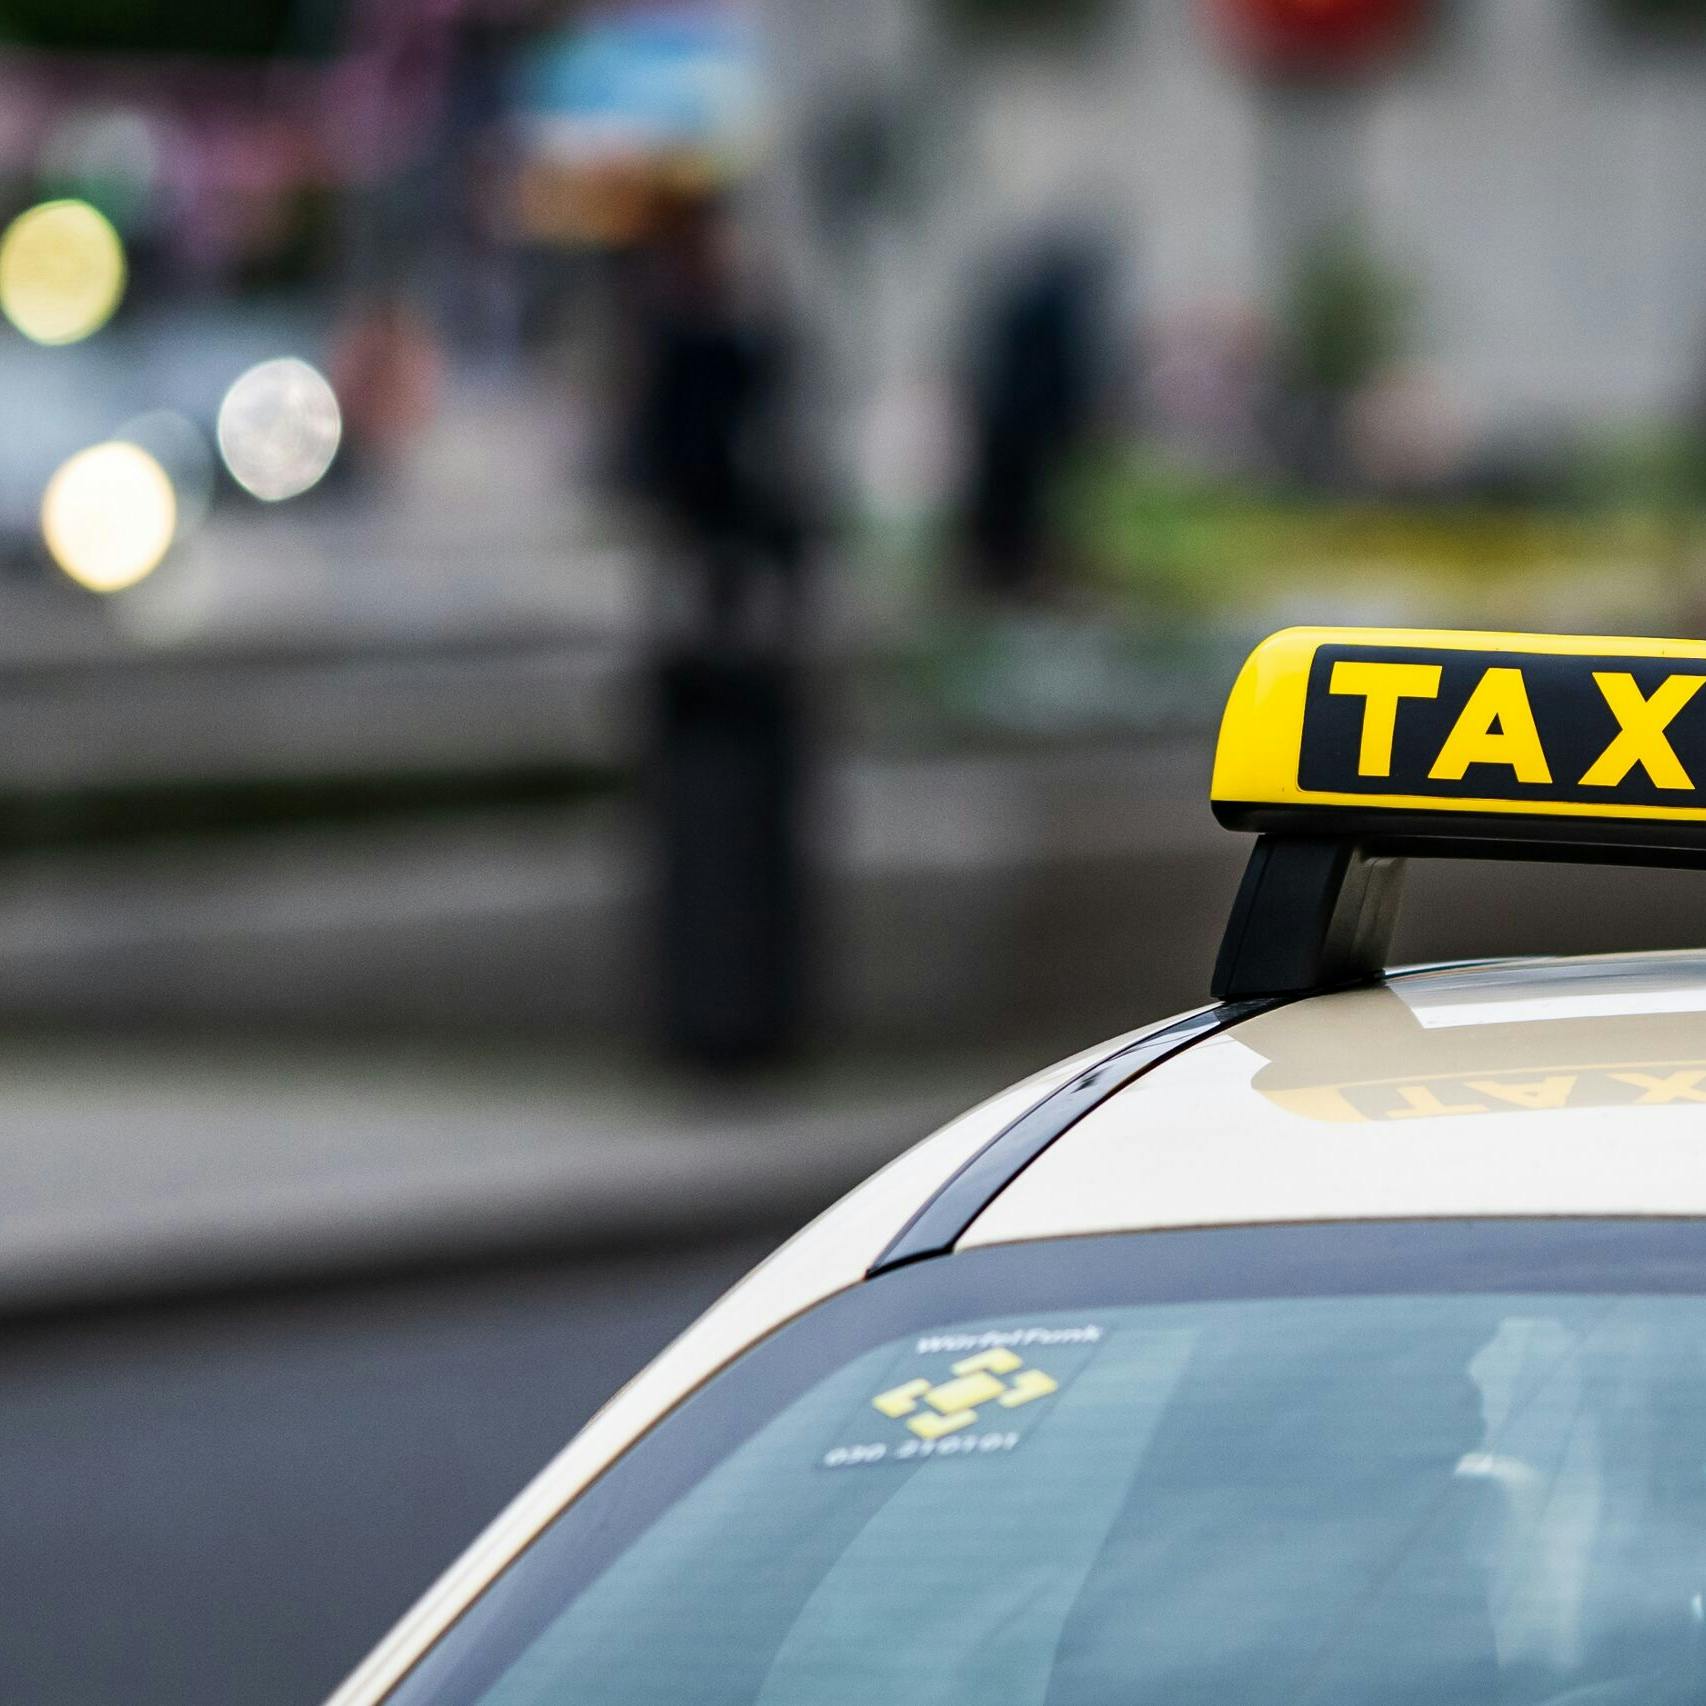 Uber wil van taxi-cao af met rechtszaak